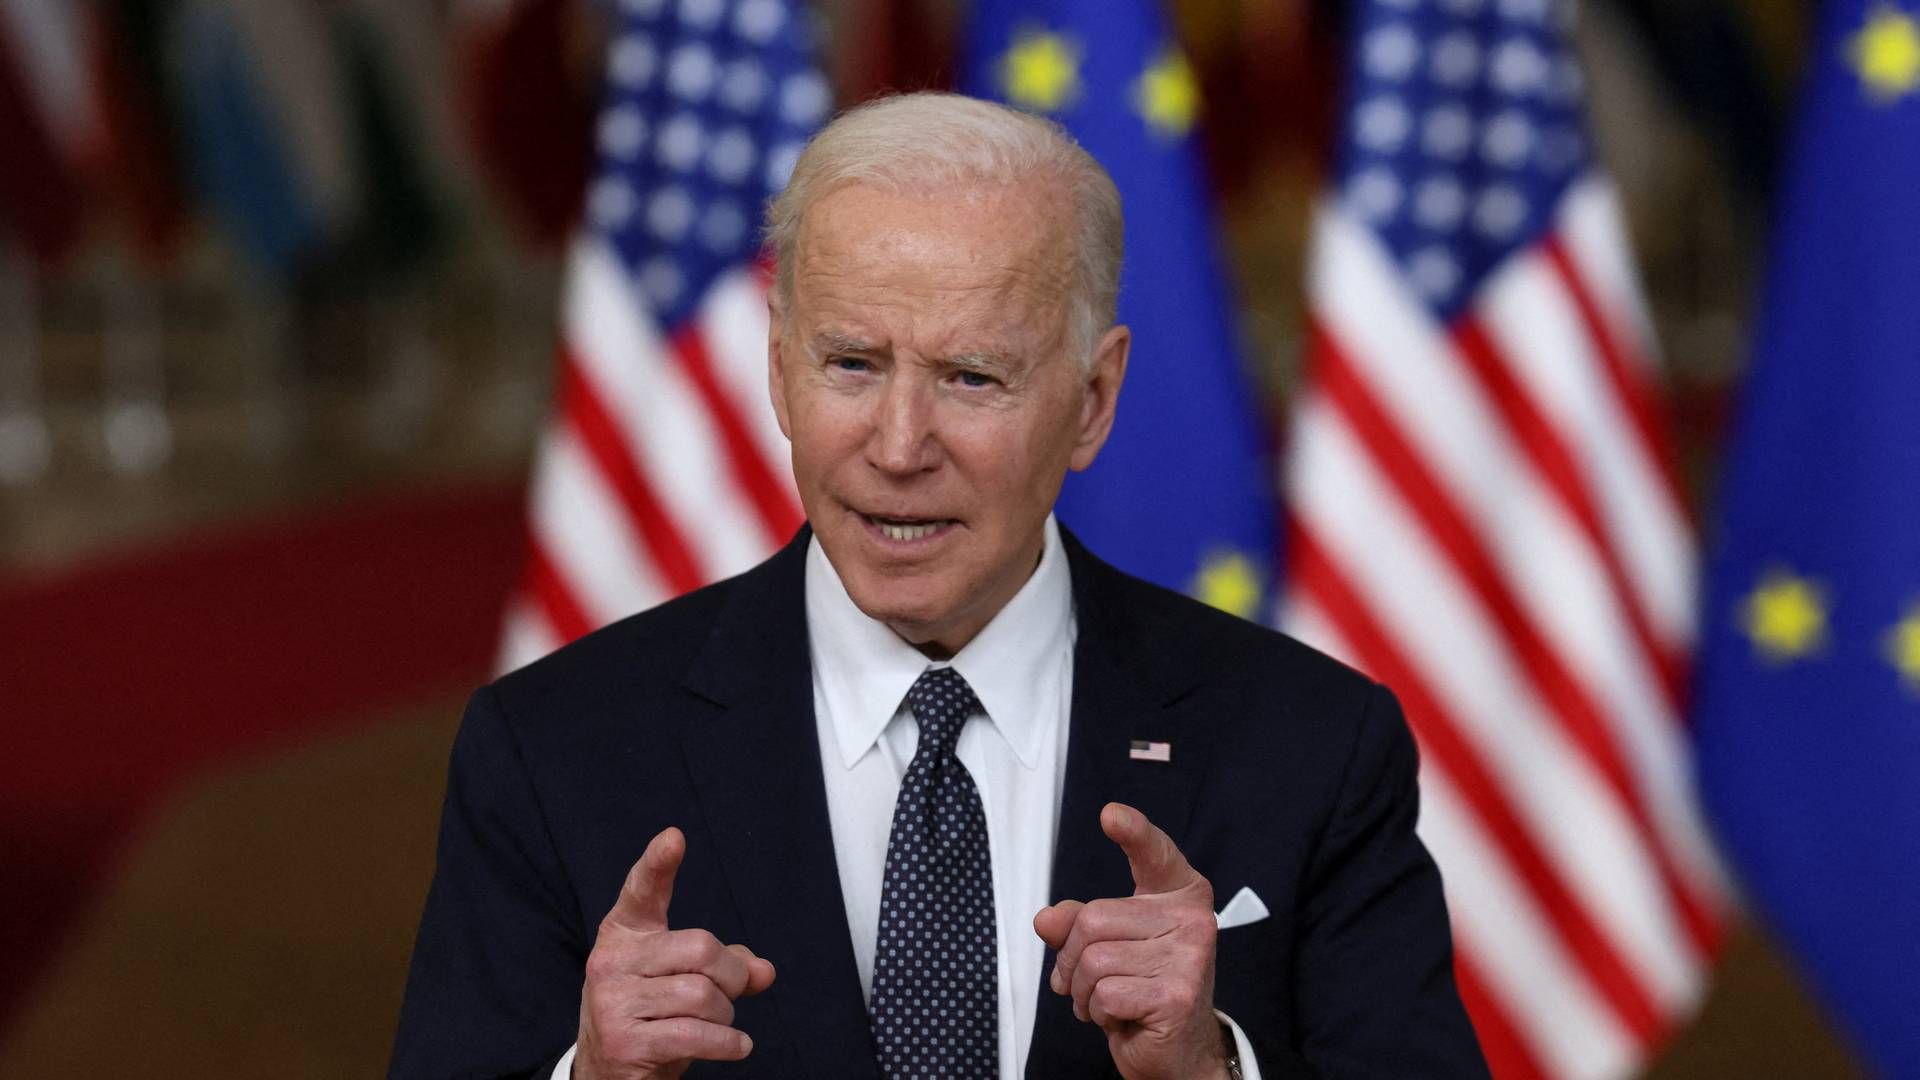 USA's præsident Joe Biden har i de seneste dage været i Bruxelles for at diskutere situationen mellem Rusland og Ukraine med europæiske ledere. | Photo: EVELYN HOCKSTEIN/REUTERS / X07527